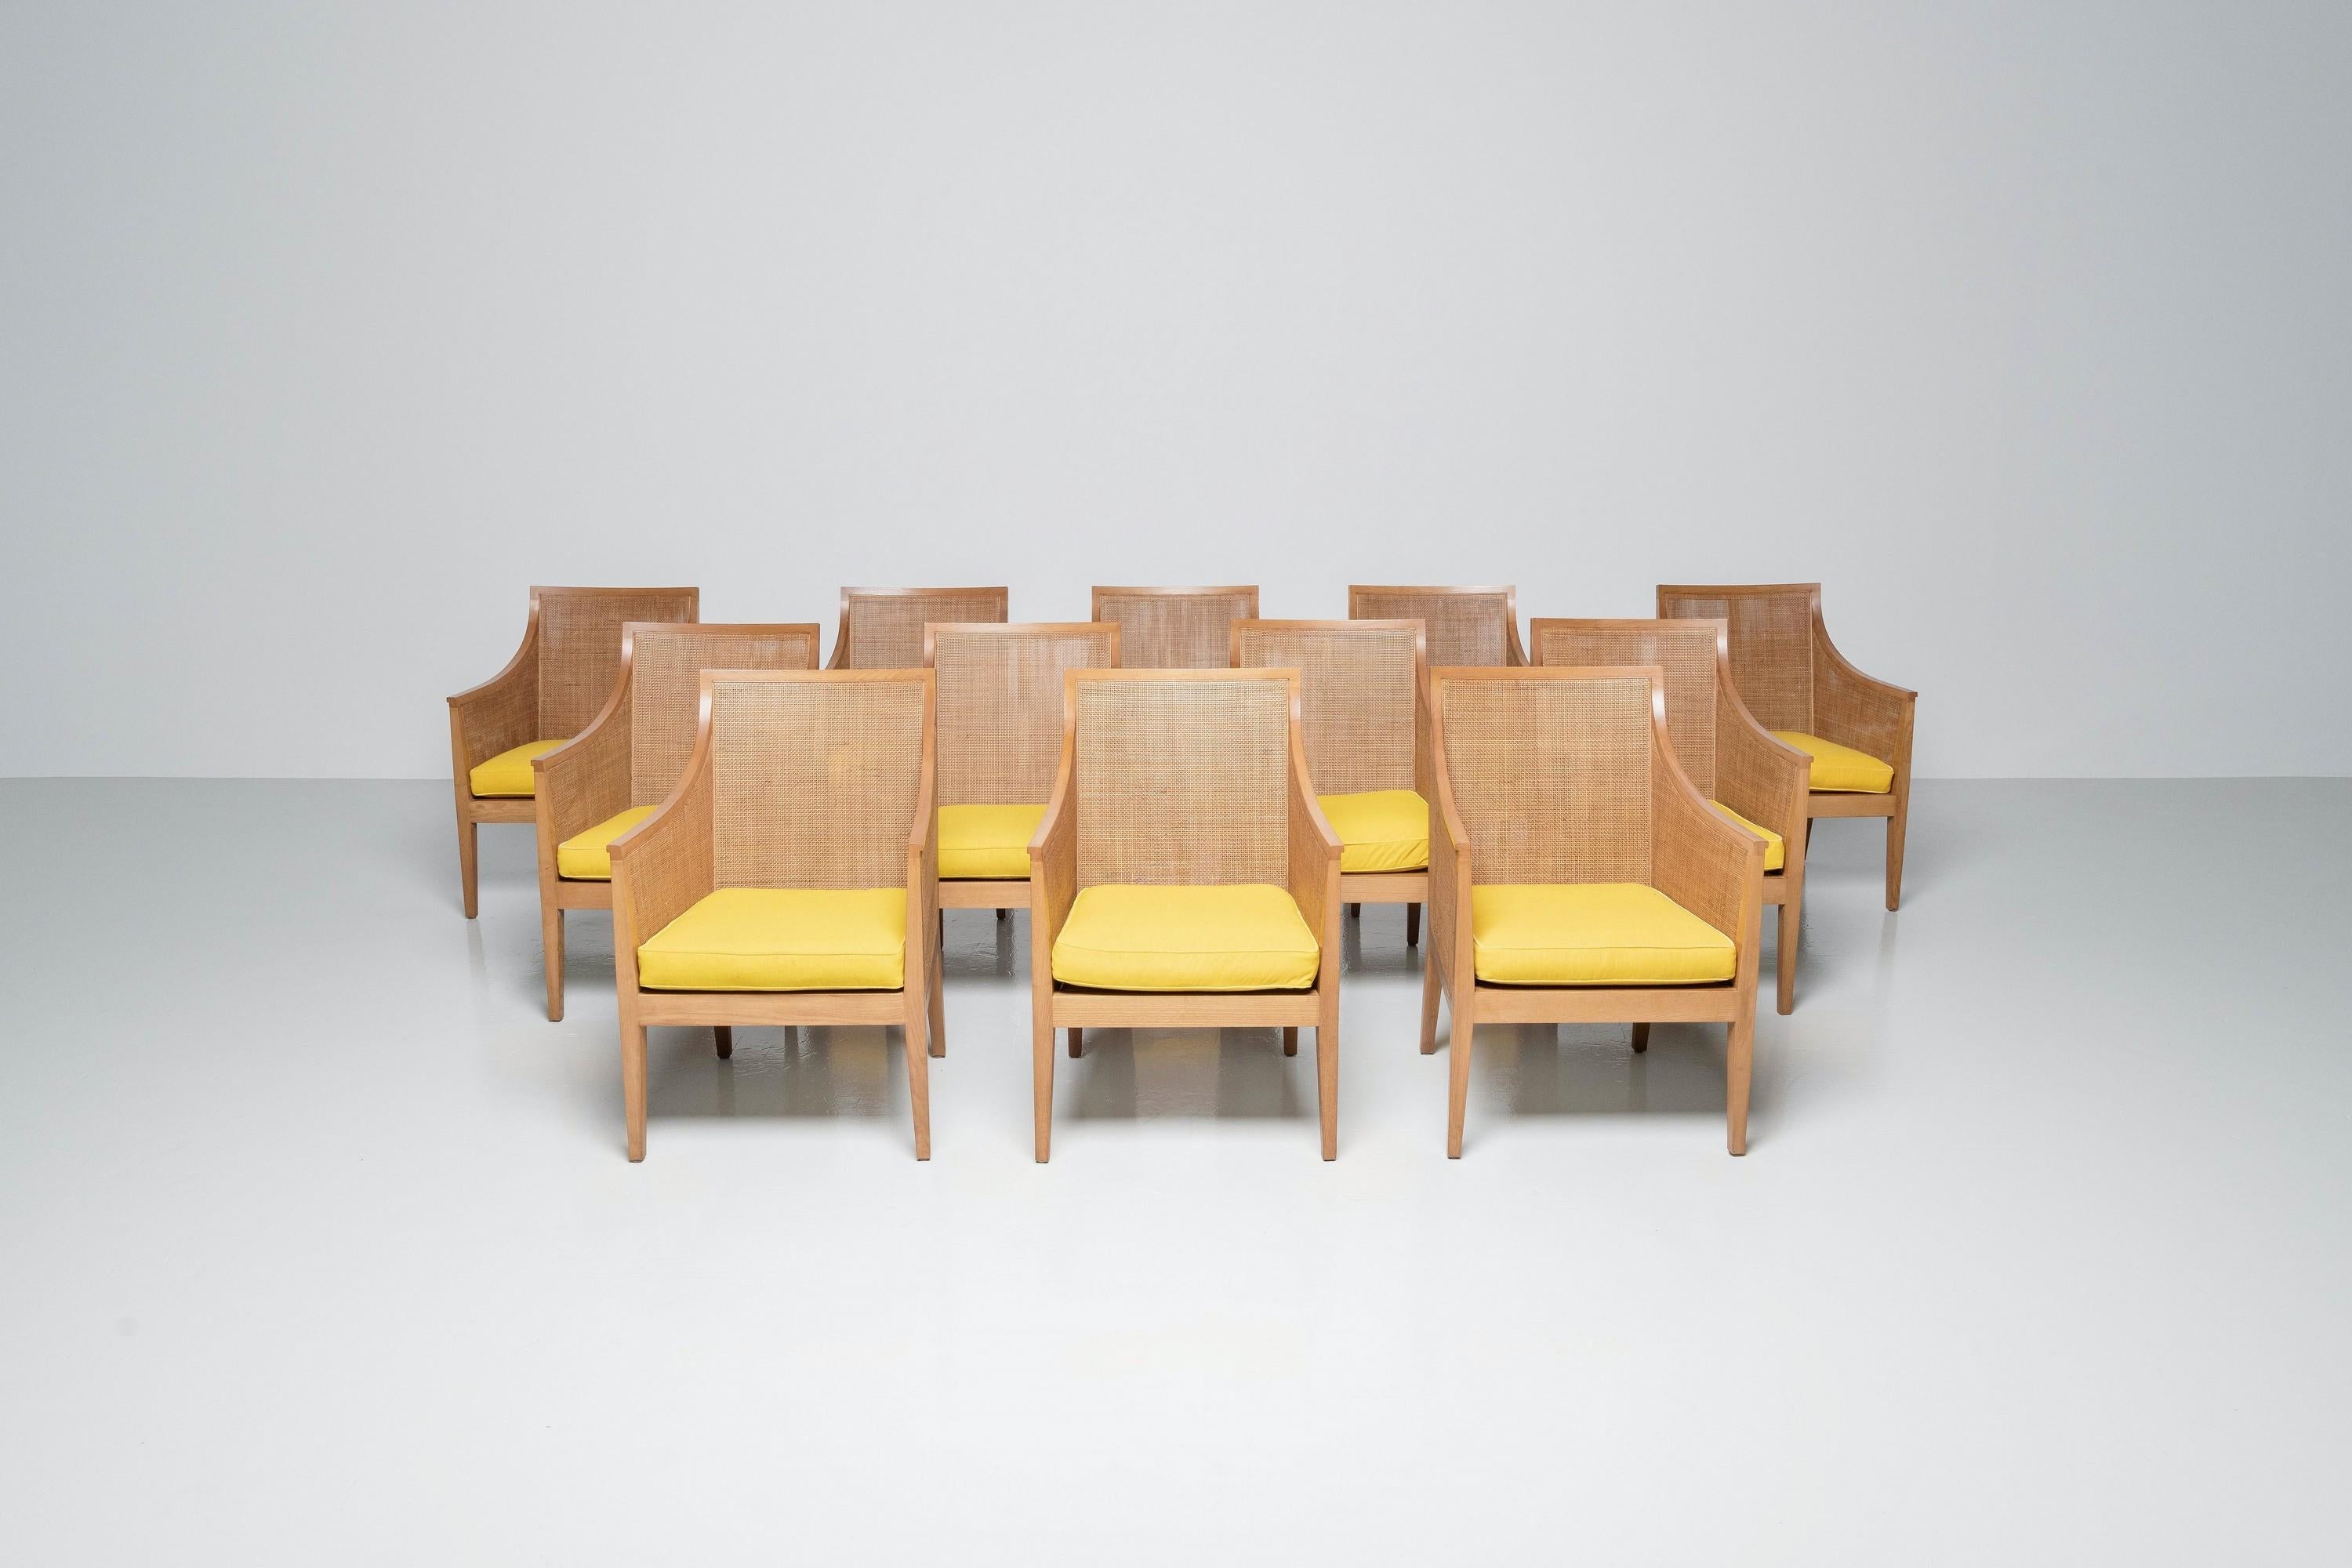 Belle paire de fauteuils d'Antonio Citterio fabriqués en Italie par Flexform en 1970. Le cadre lui-même est en bois de hêtre et est recouvert de rotin à l'intérieur et à l'extérieur.

Le modèle présente une menuiserie en bois ferme, des accoudoirs